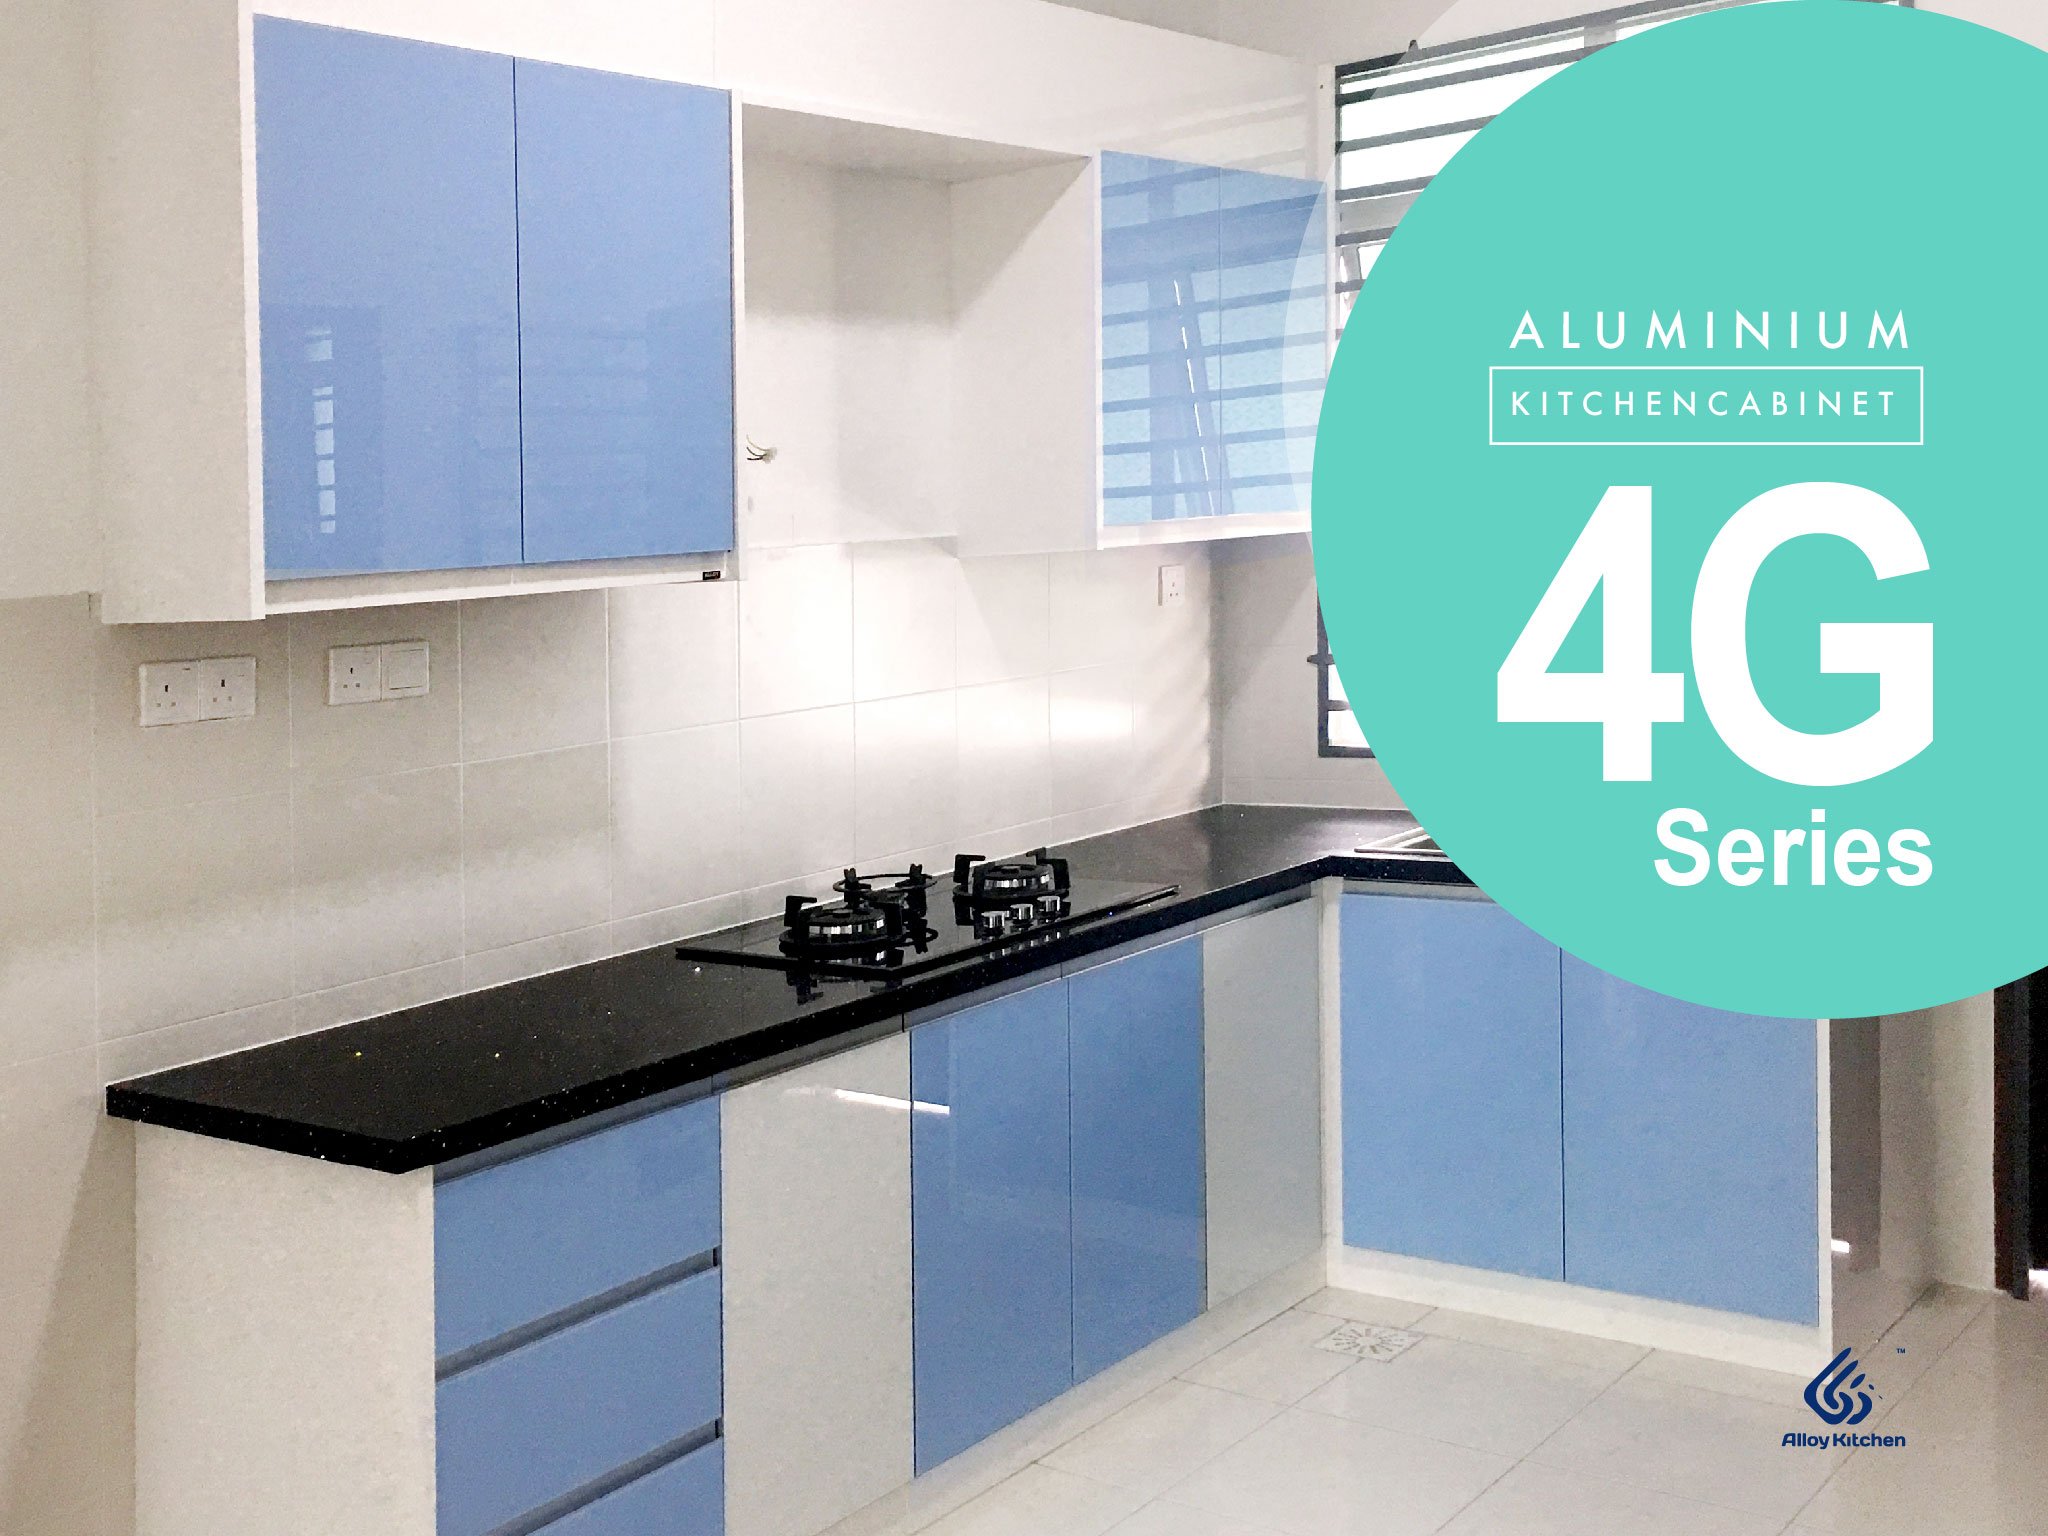 3g glass kitchen cabinet design